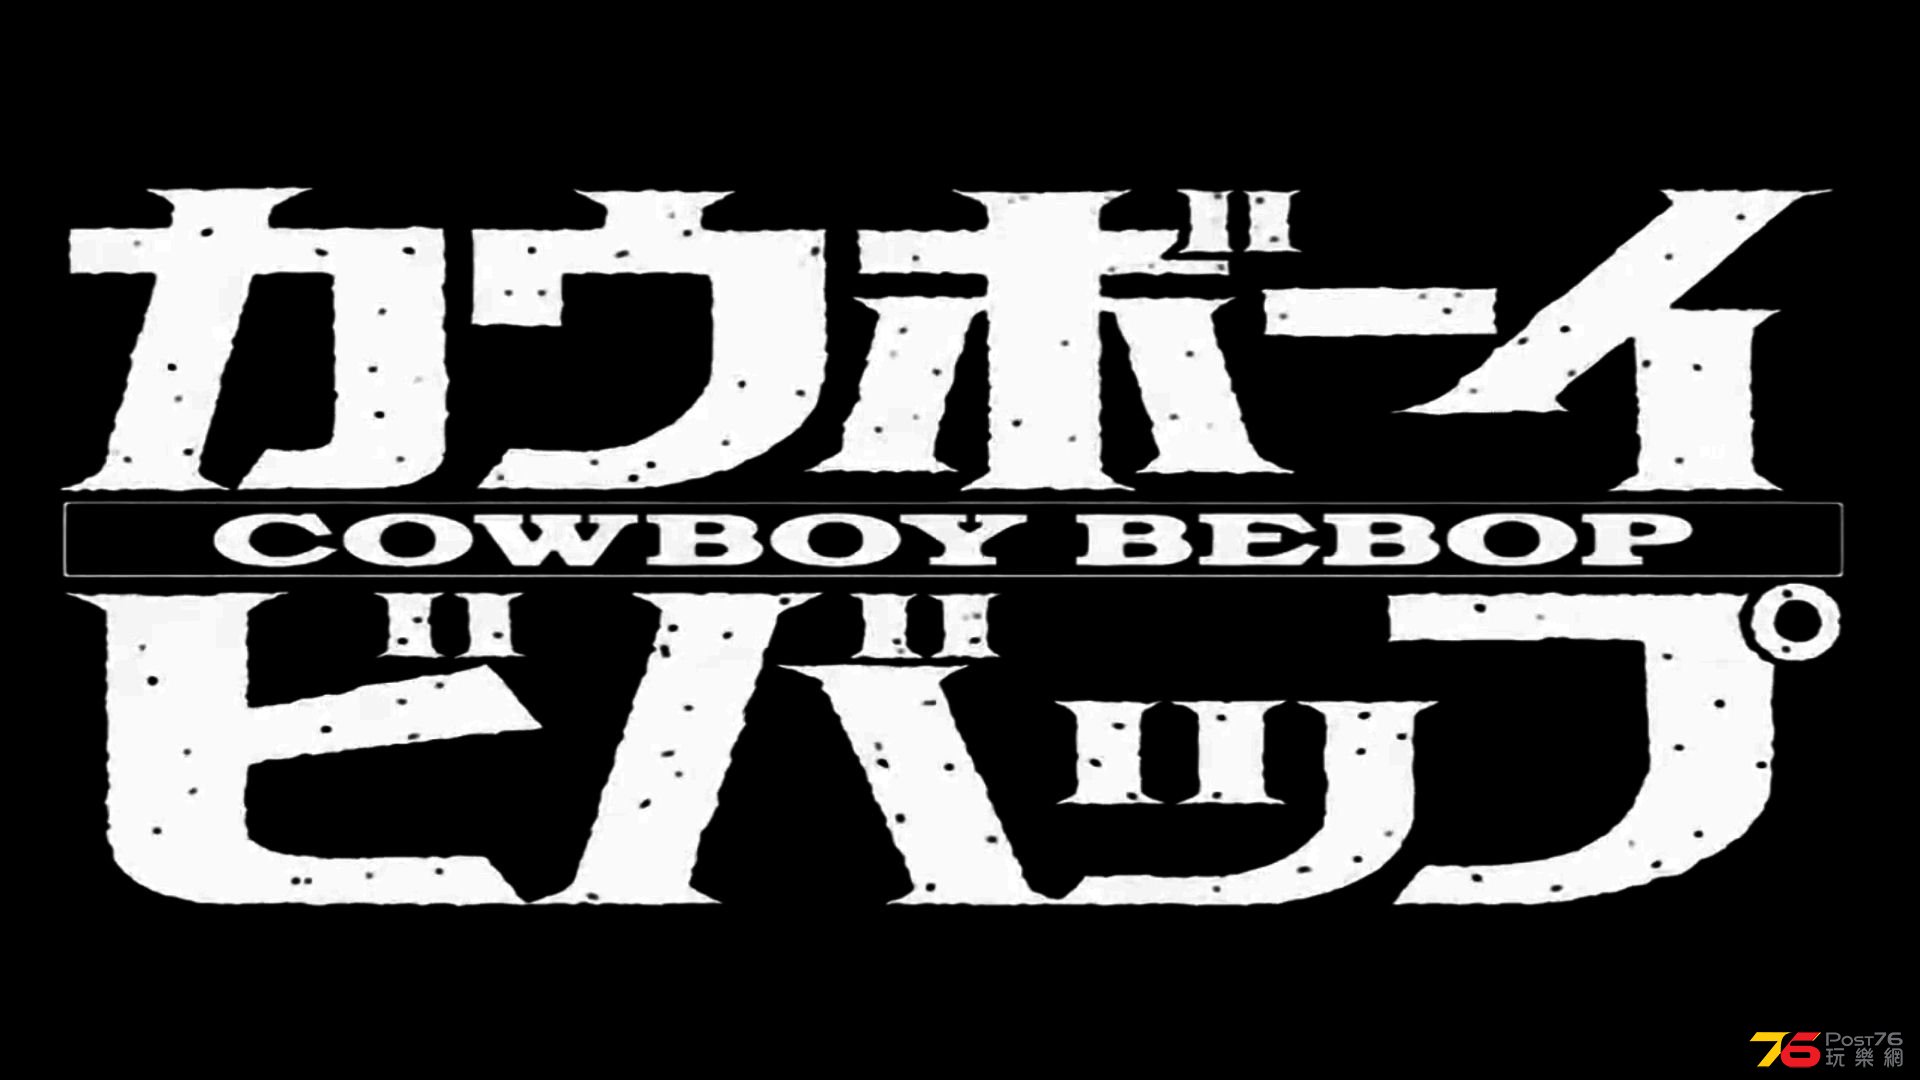 wallpaper-bebop-spike-screensavers-cowboy-anime-image.jpg